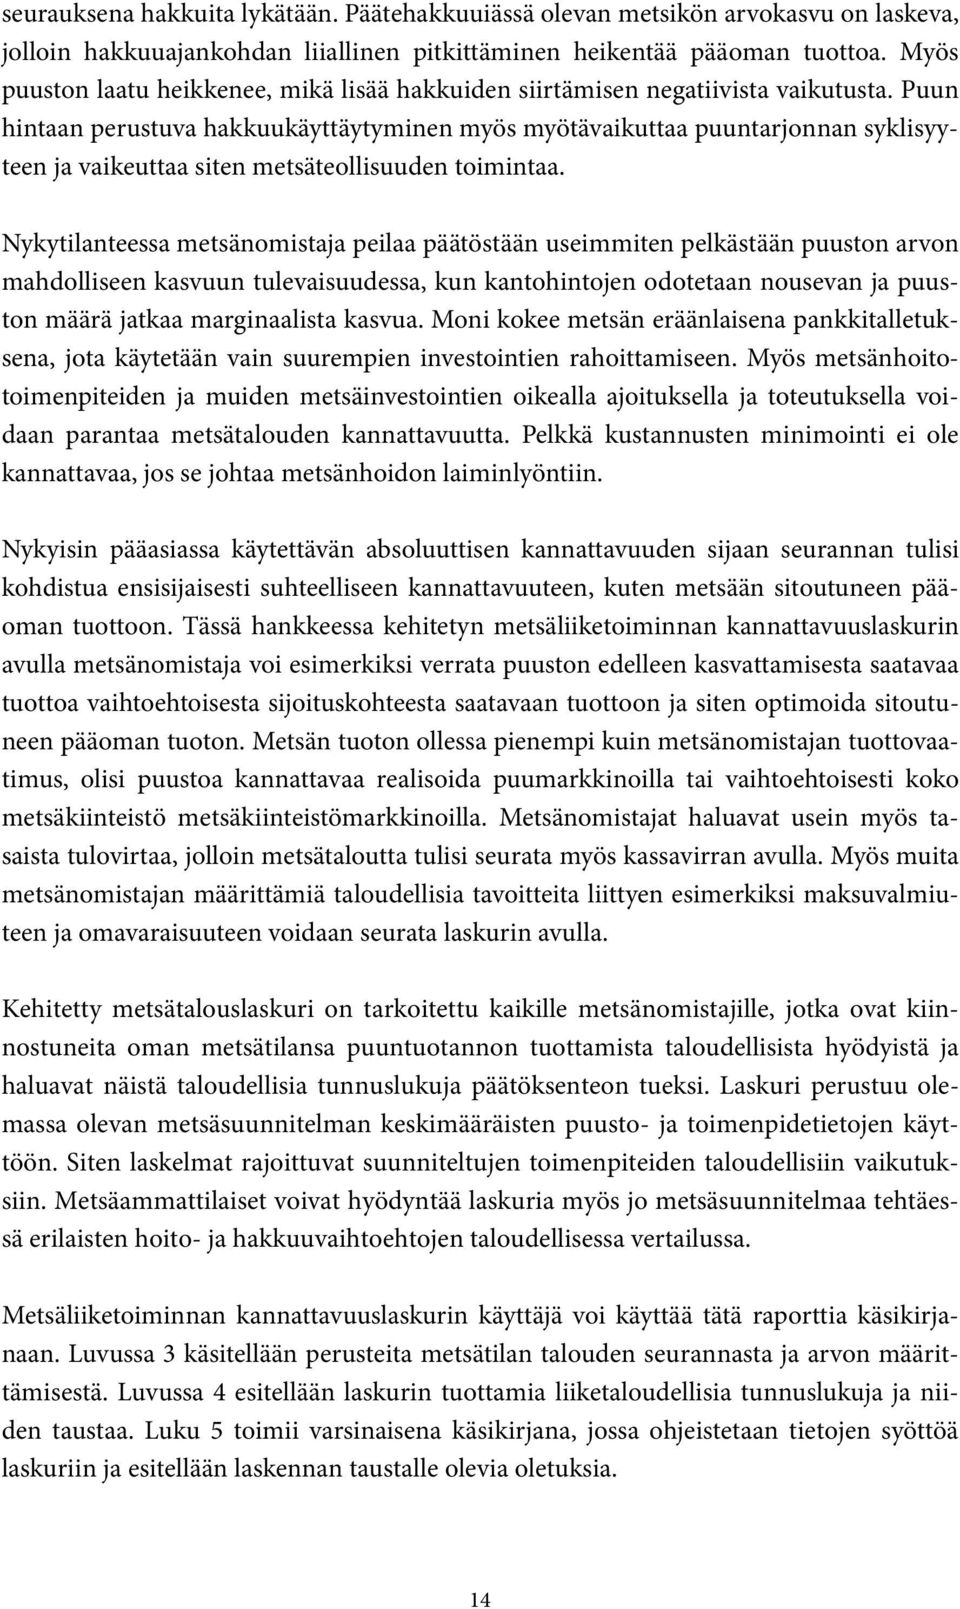 METSÄLIIKETOIMINNAN KANNATTAVUUSLASKURI - PDF Free Download